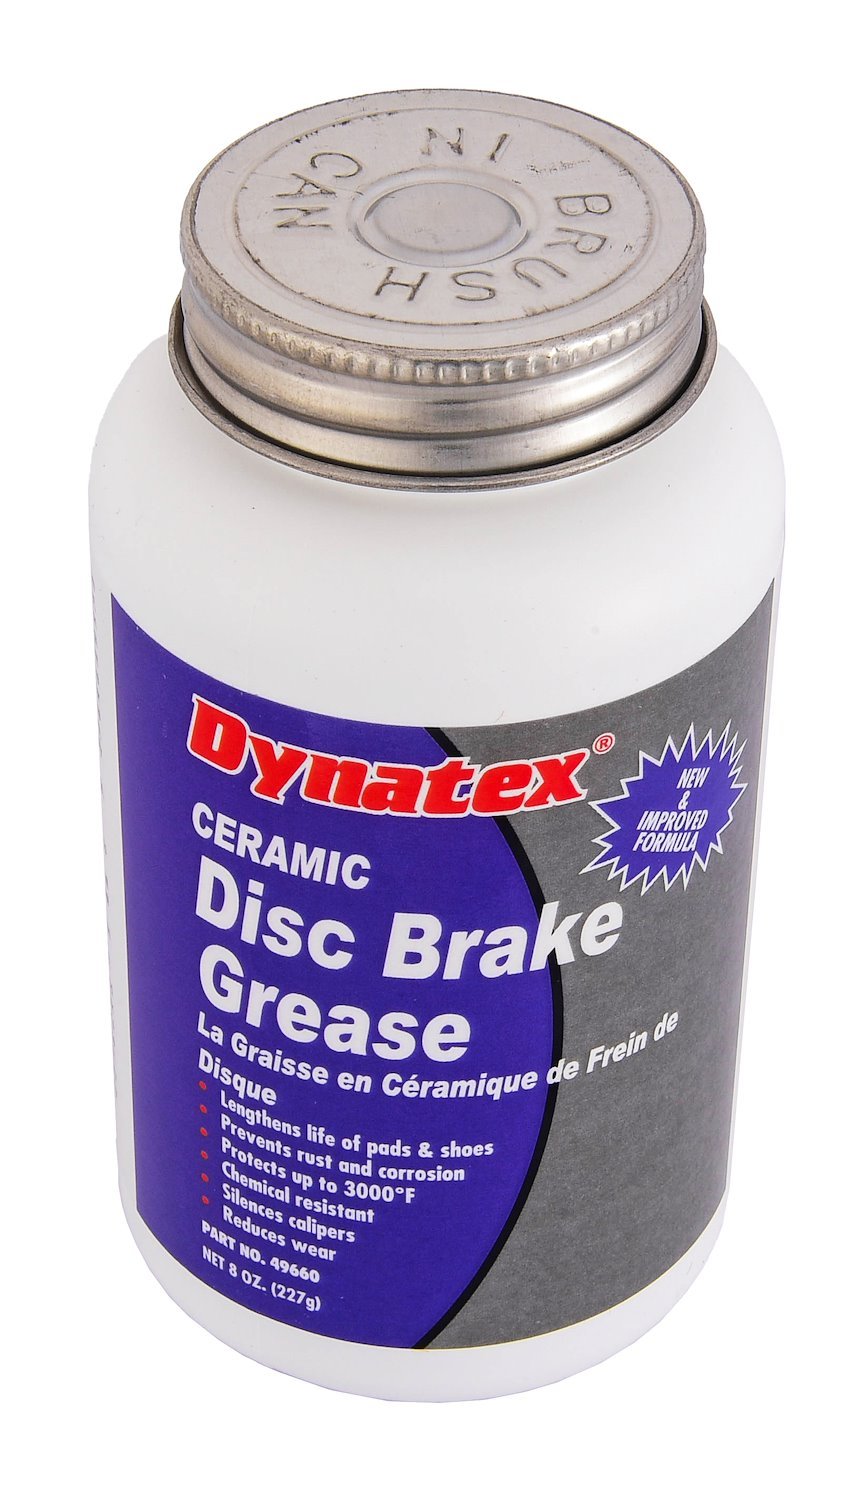 Ceramic Disc Brake Grease [8 oz.]